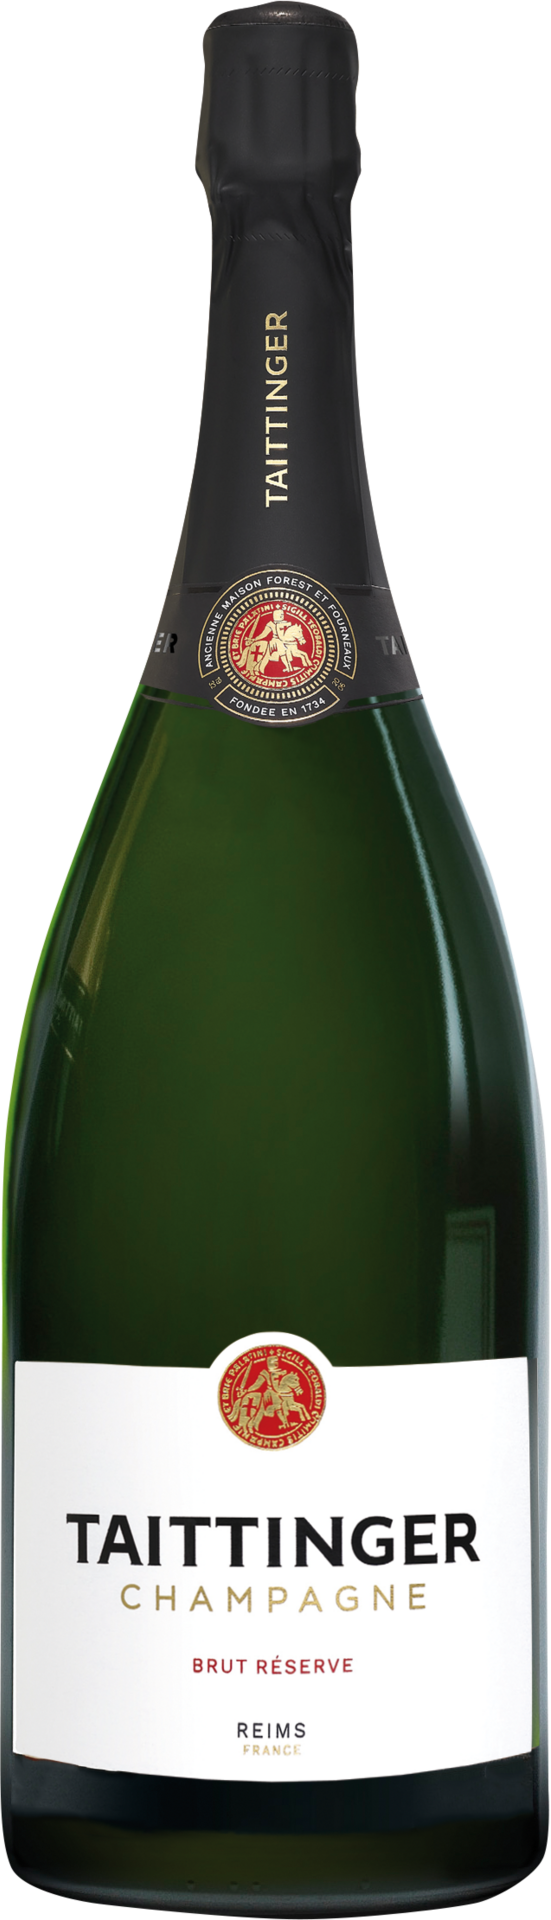 Champagne Taittinger - Brut Réserve